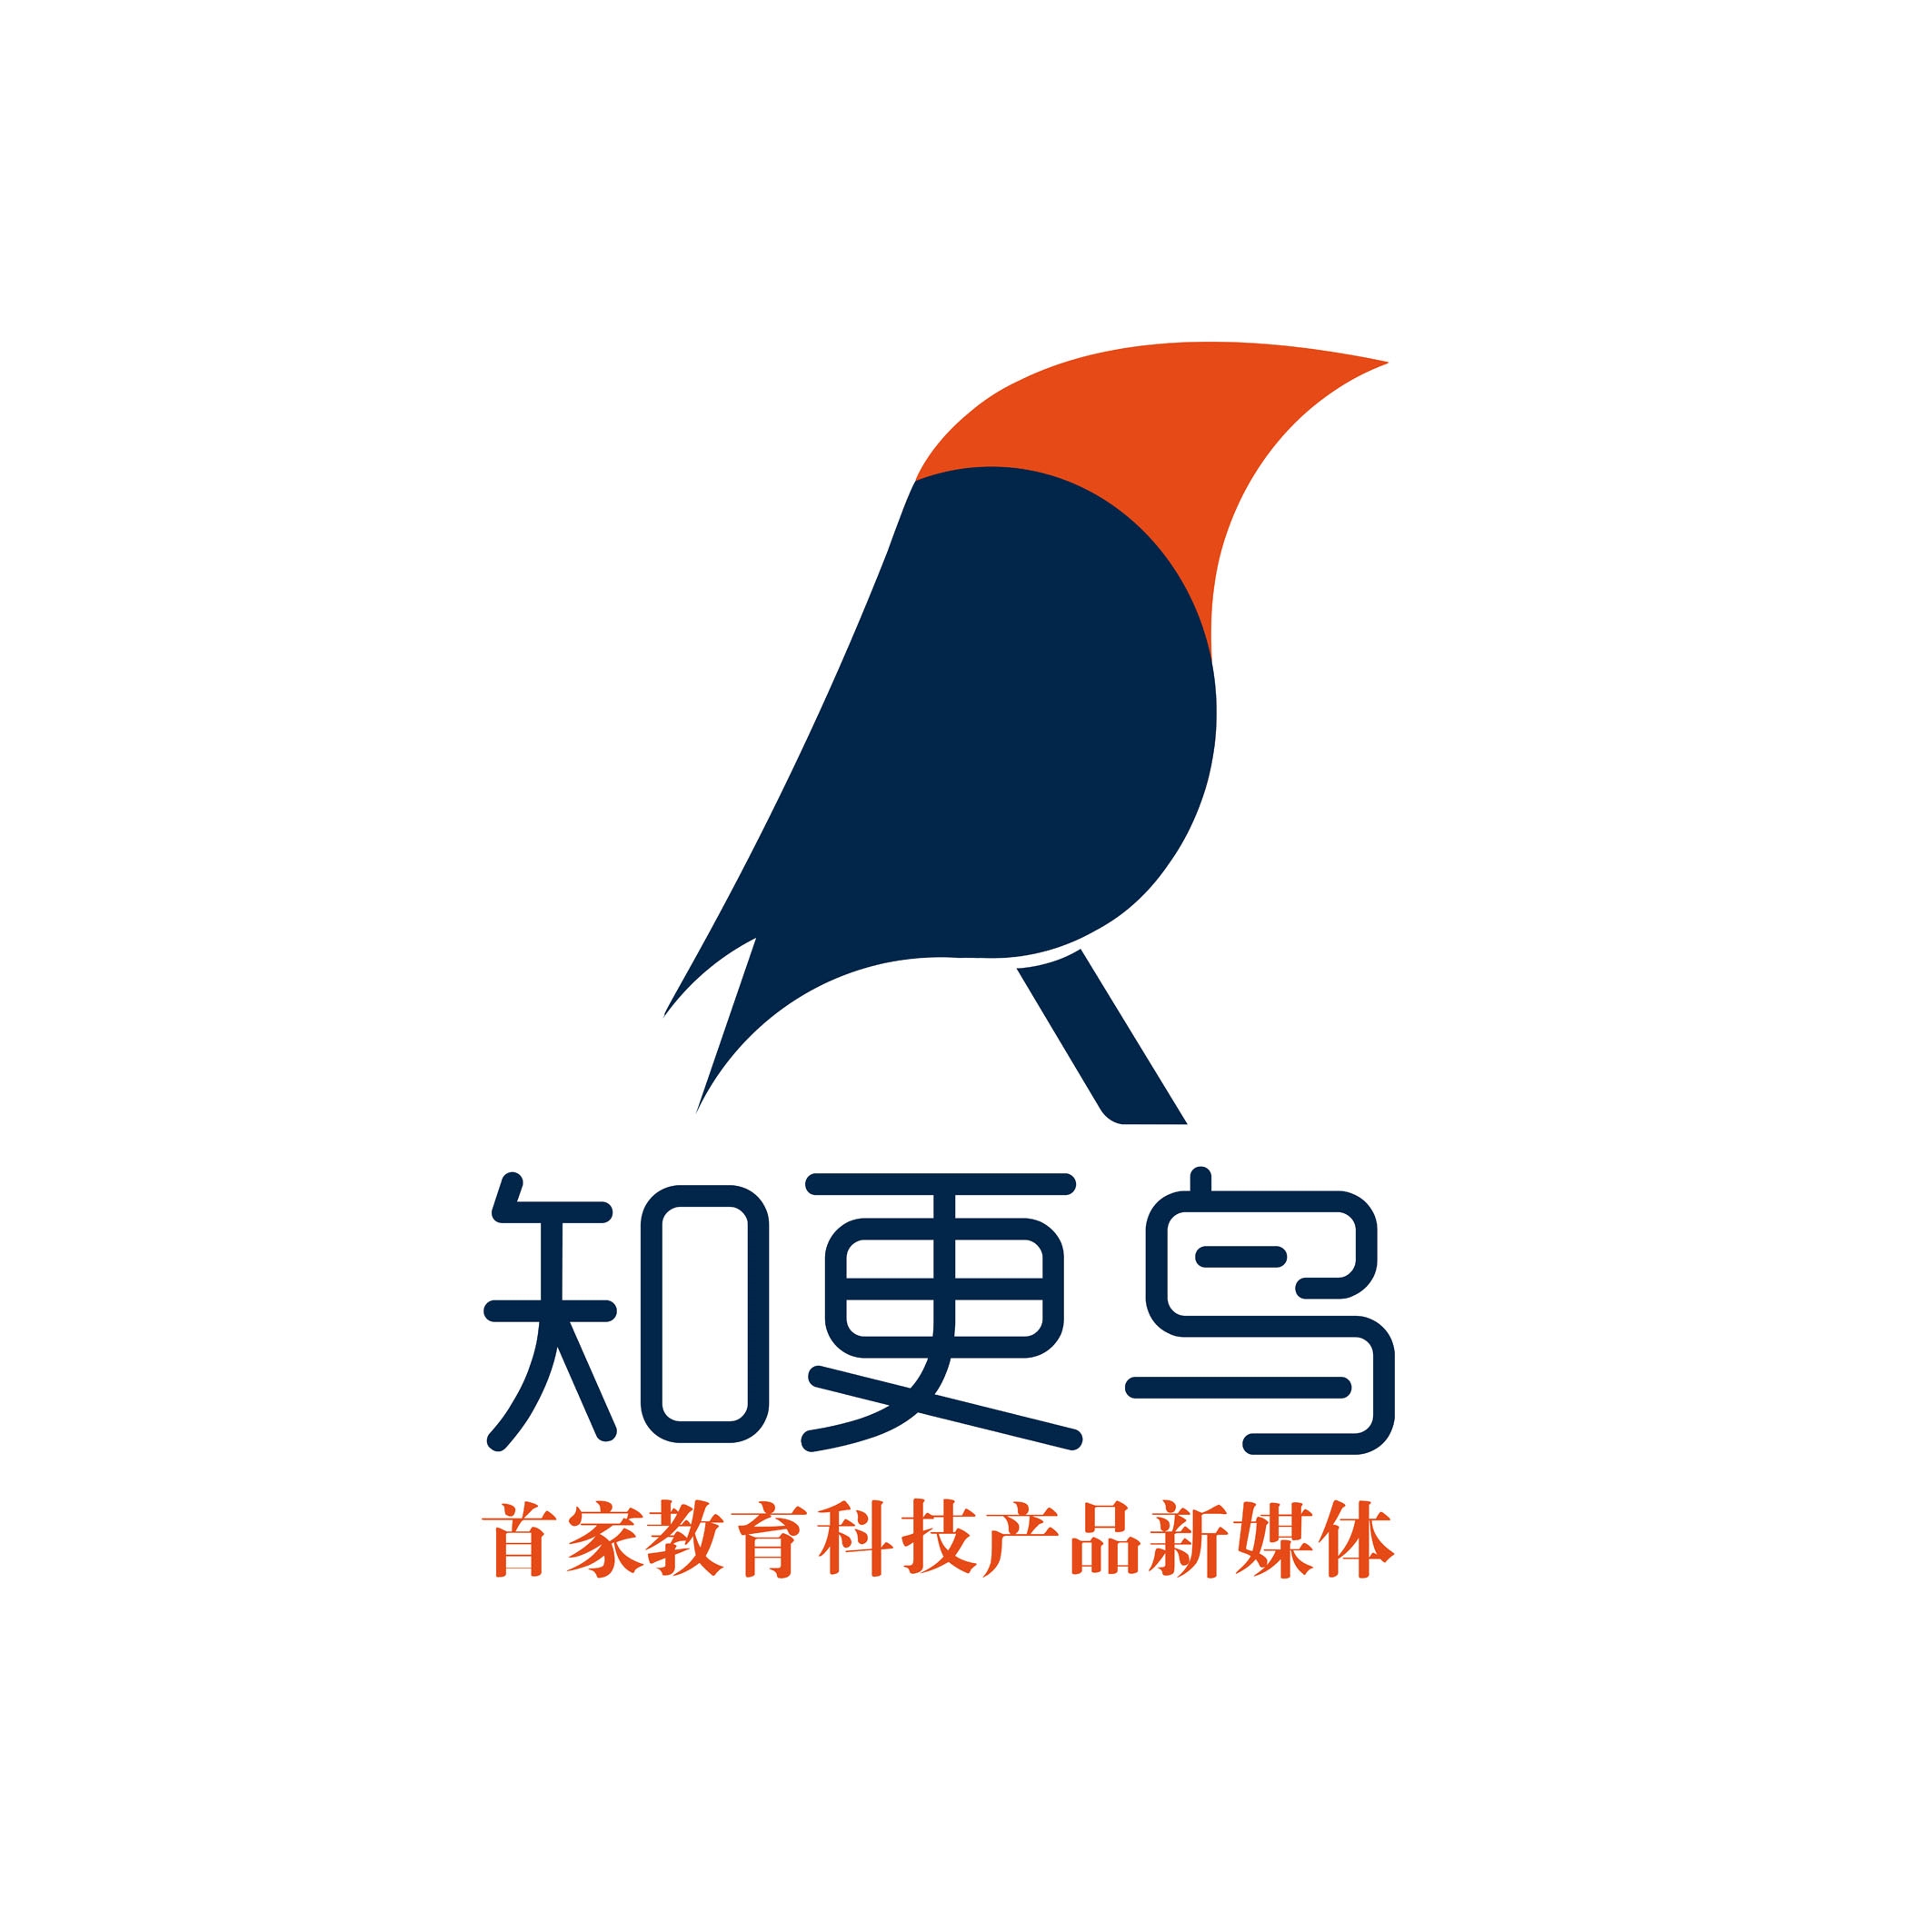 知更鸟 logo图片